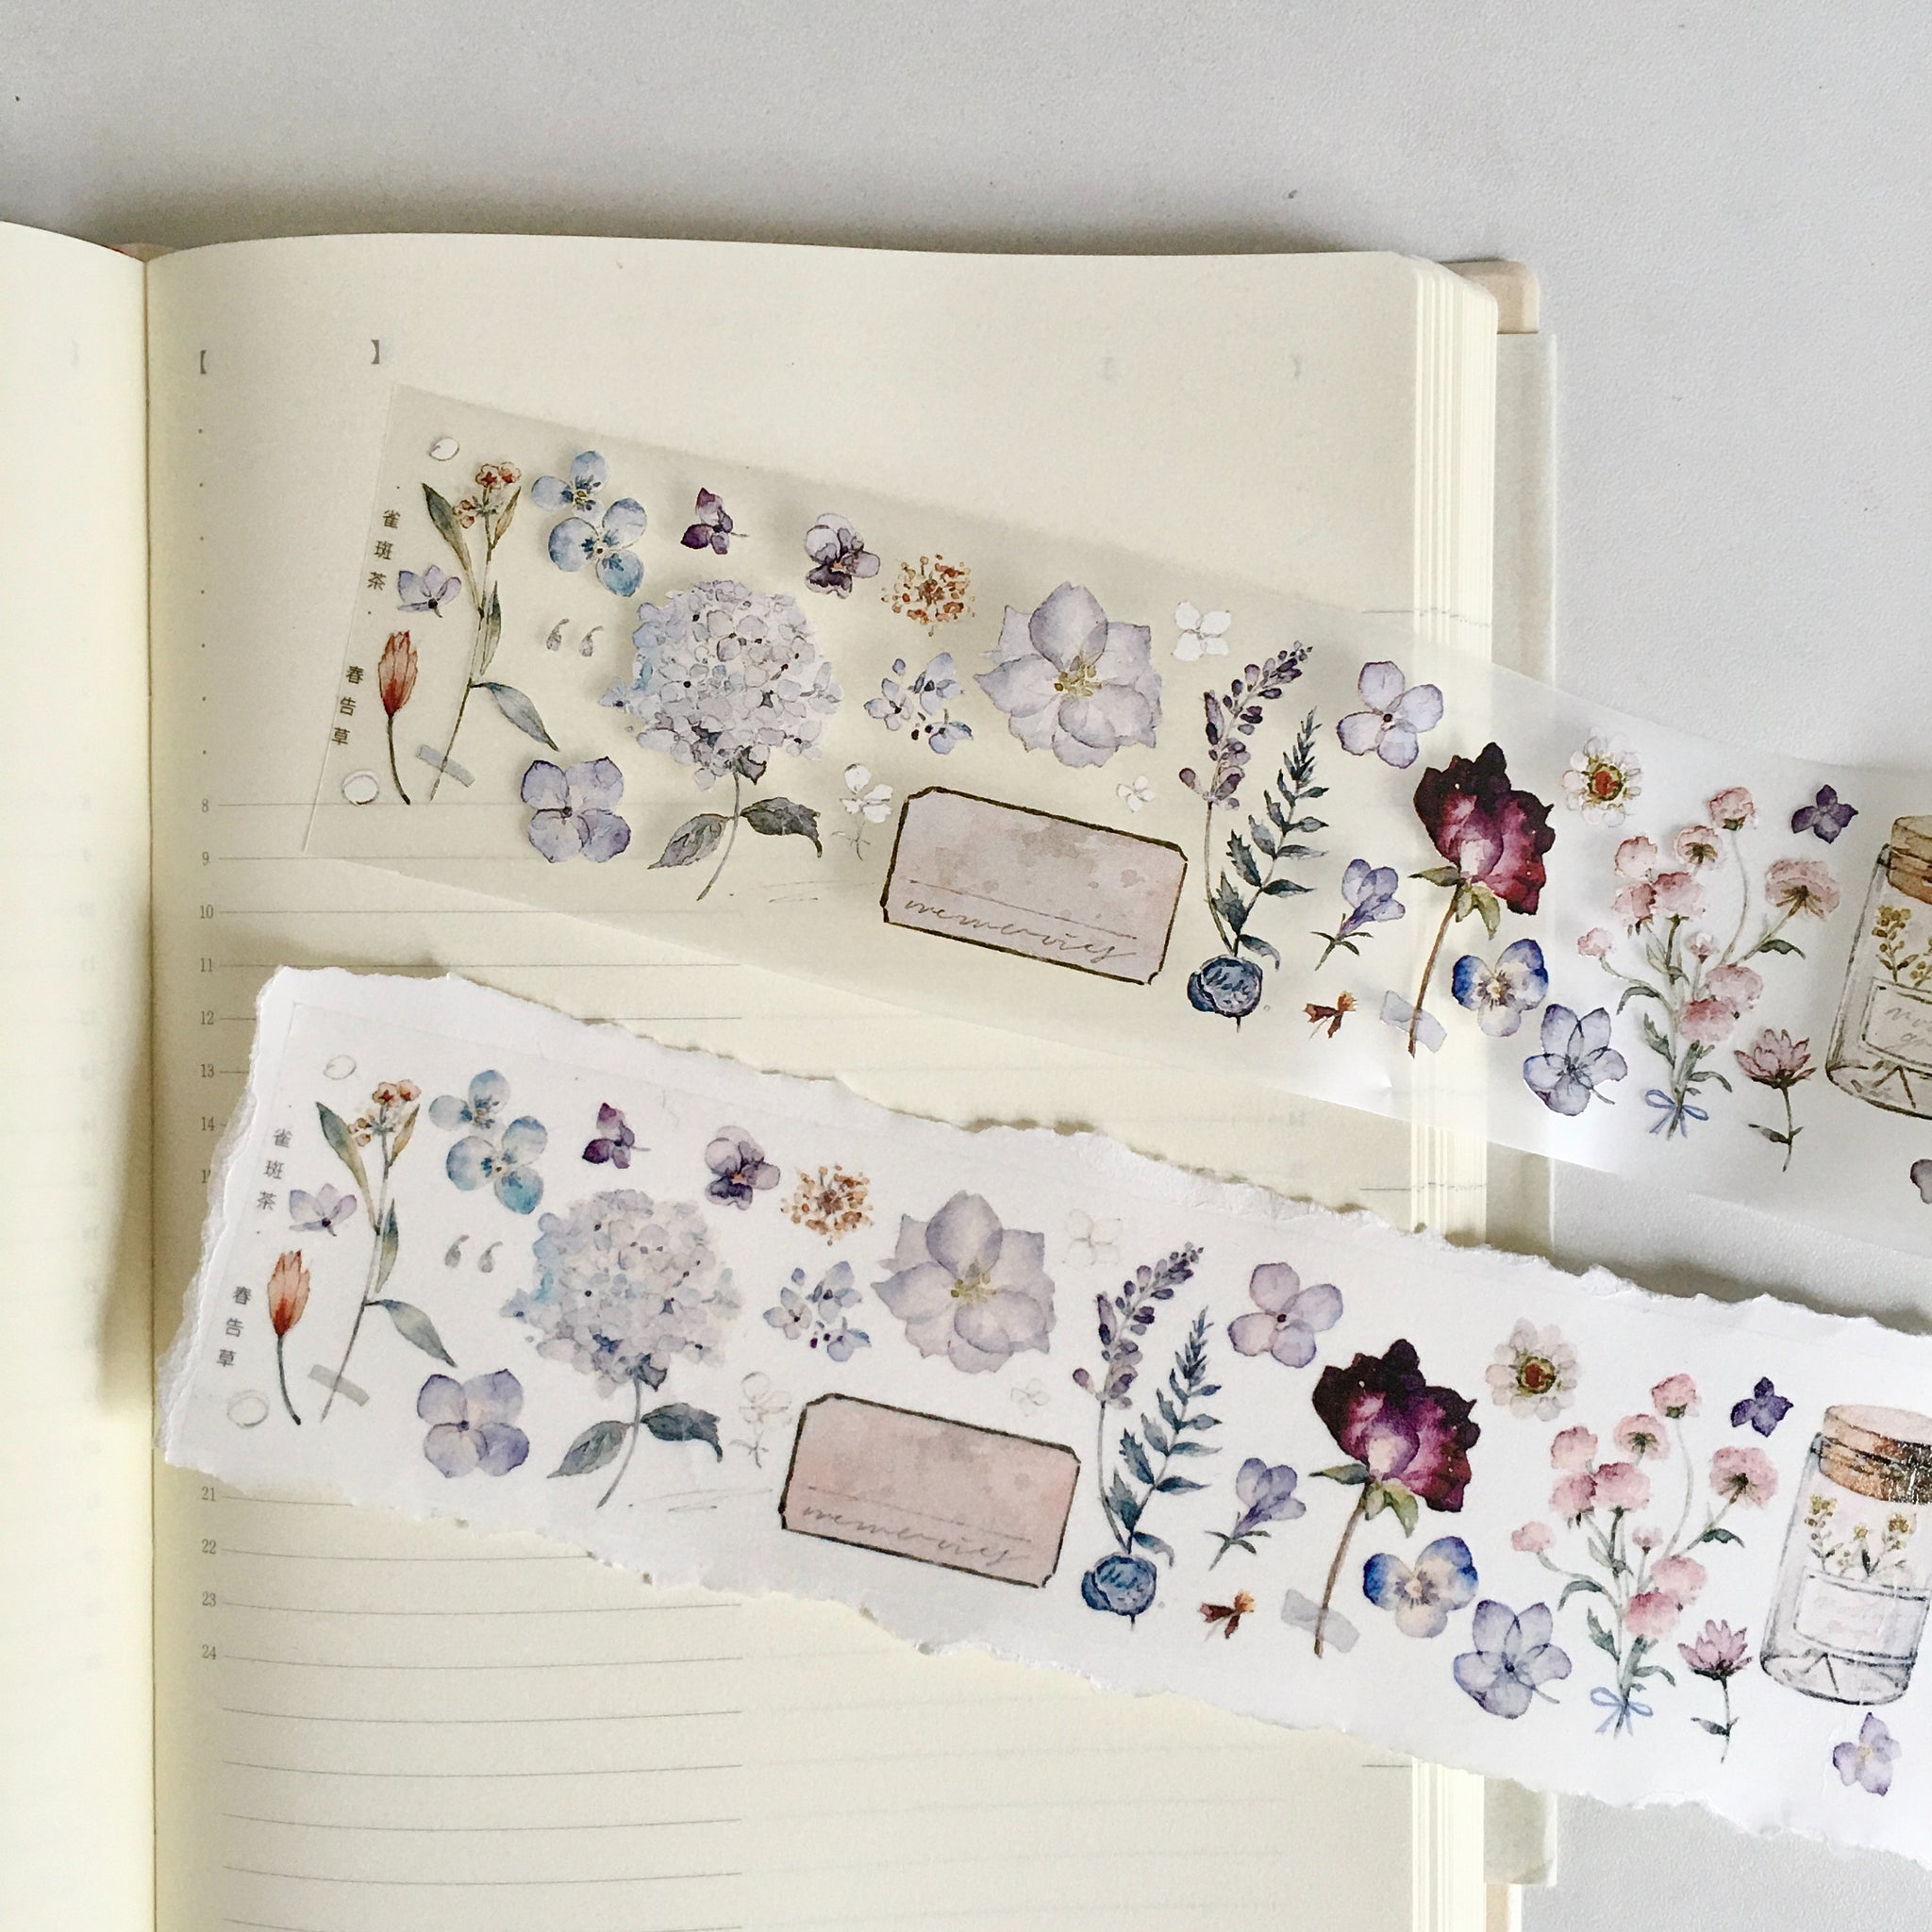 Freckles Tea Tape Sample: Spring Blossom